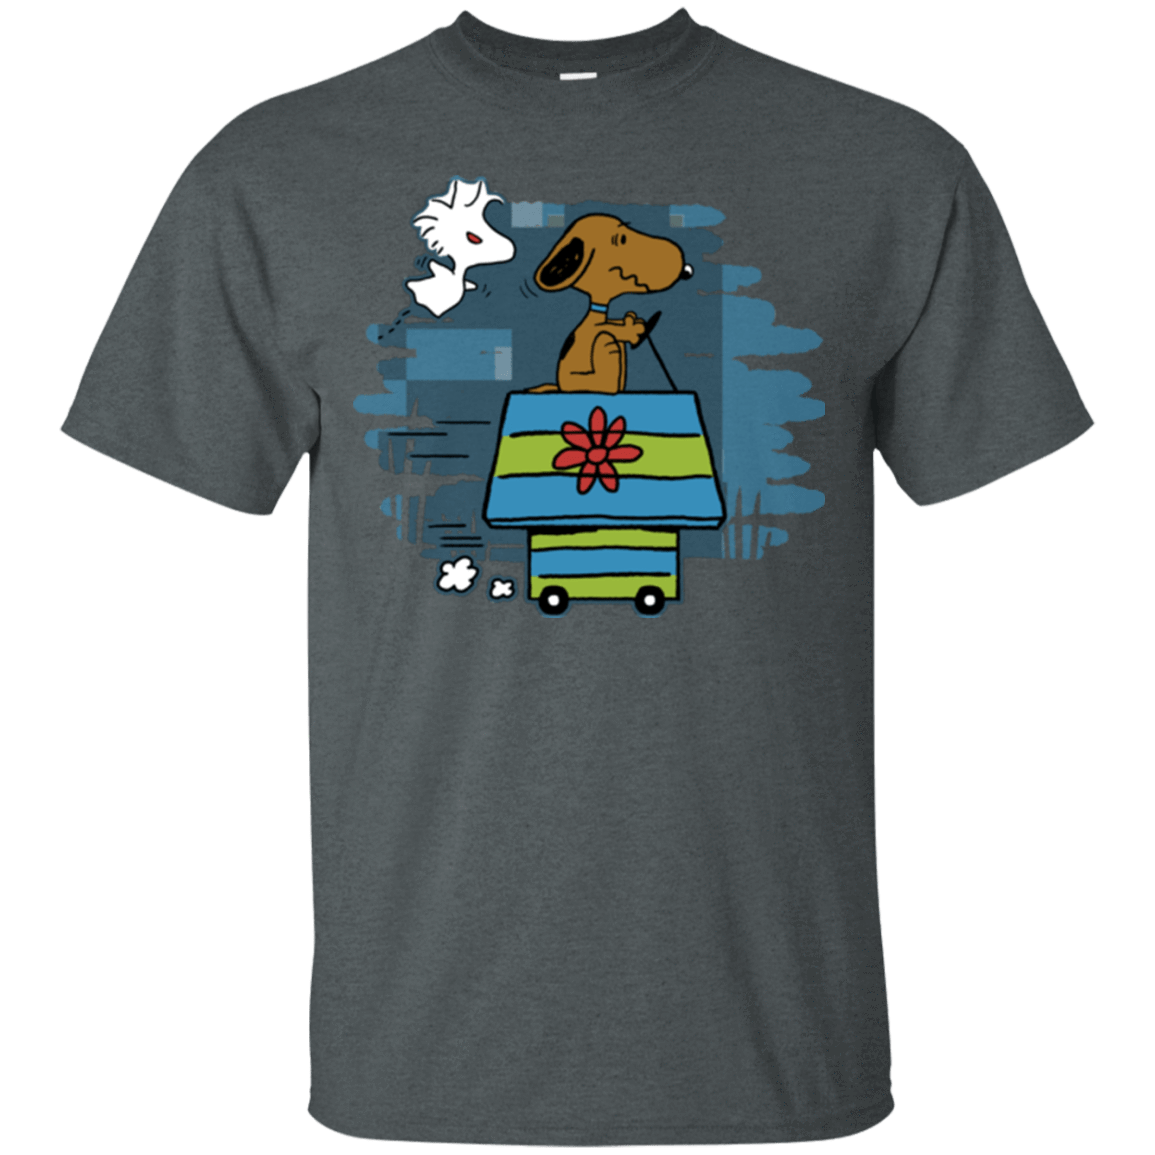 T-Shirts Dark Heather / Small Snoopydoo T-Shirt